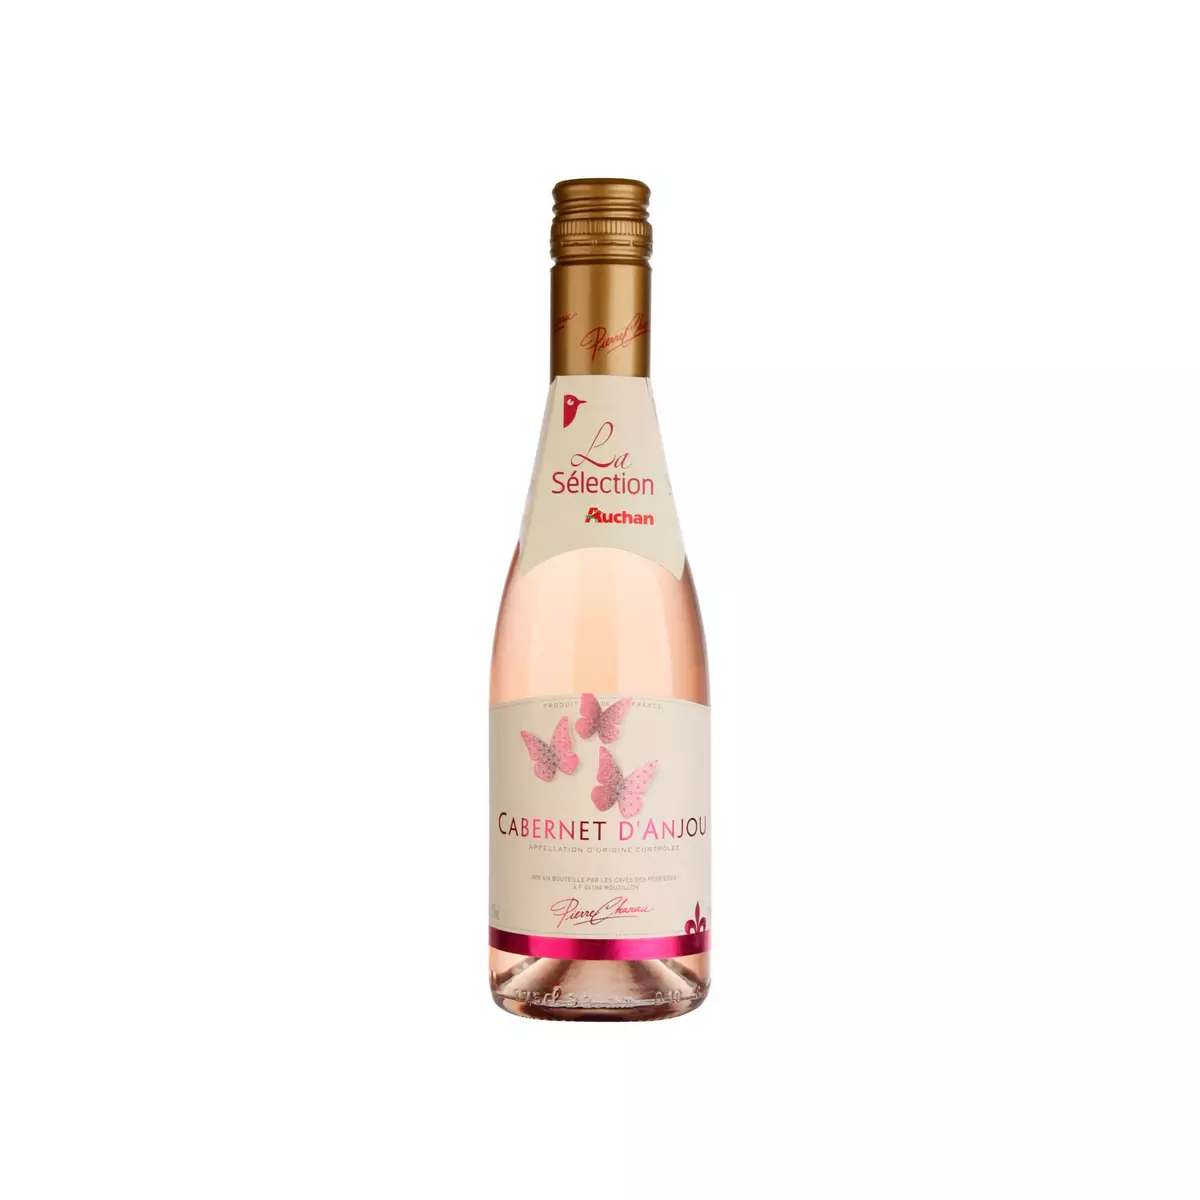 PIERRE CHANAU AOP Cabernet d'Anjou rosé Petit format 37,5cl